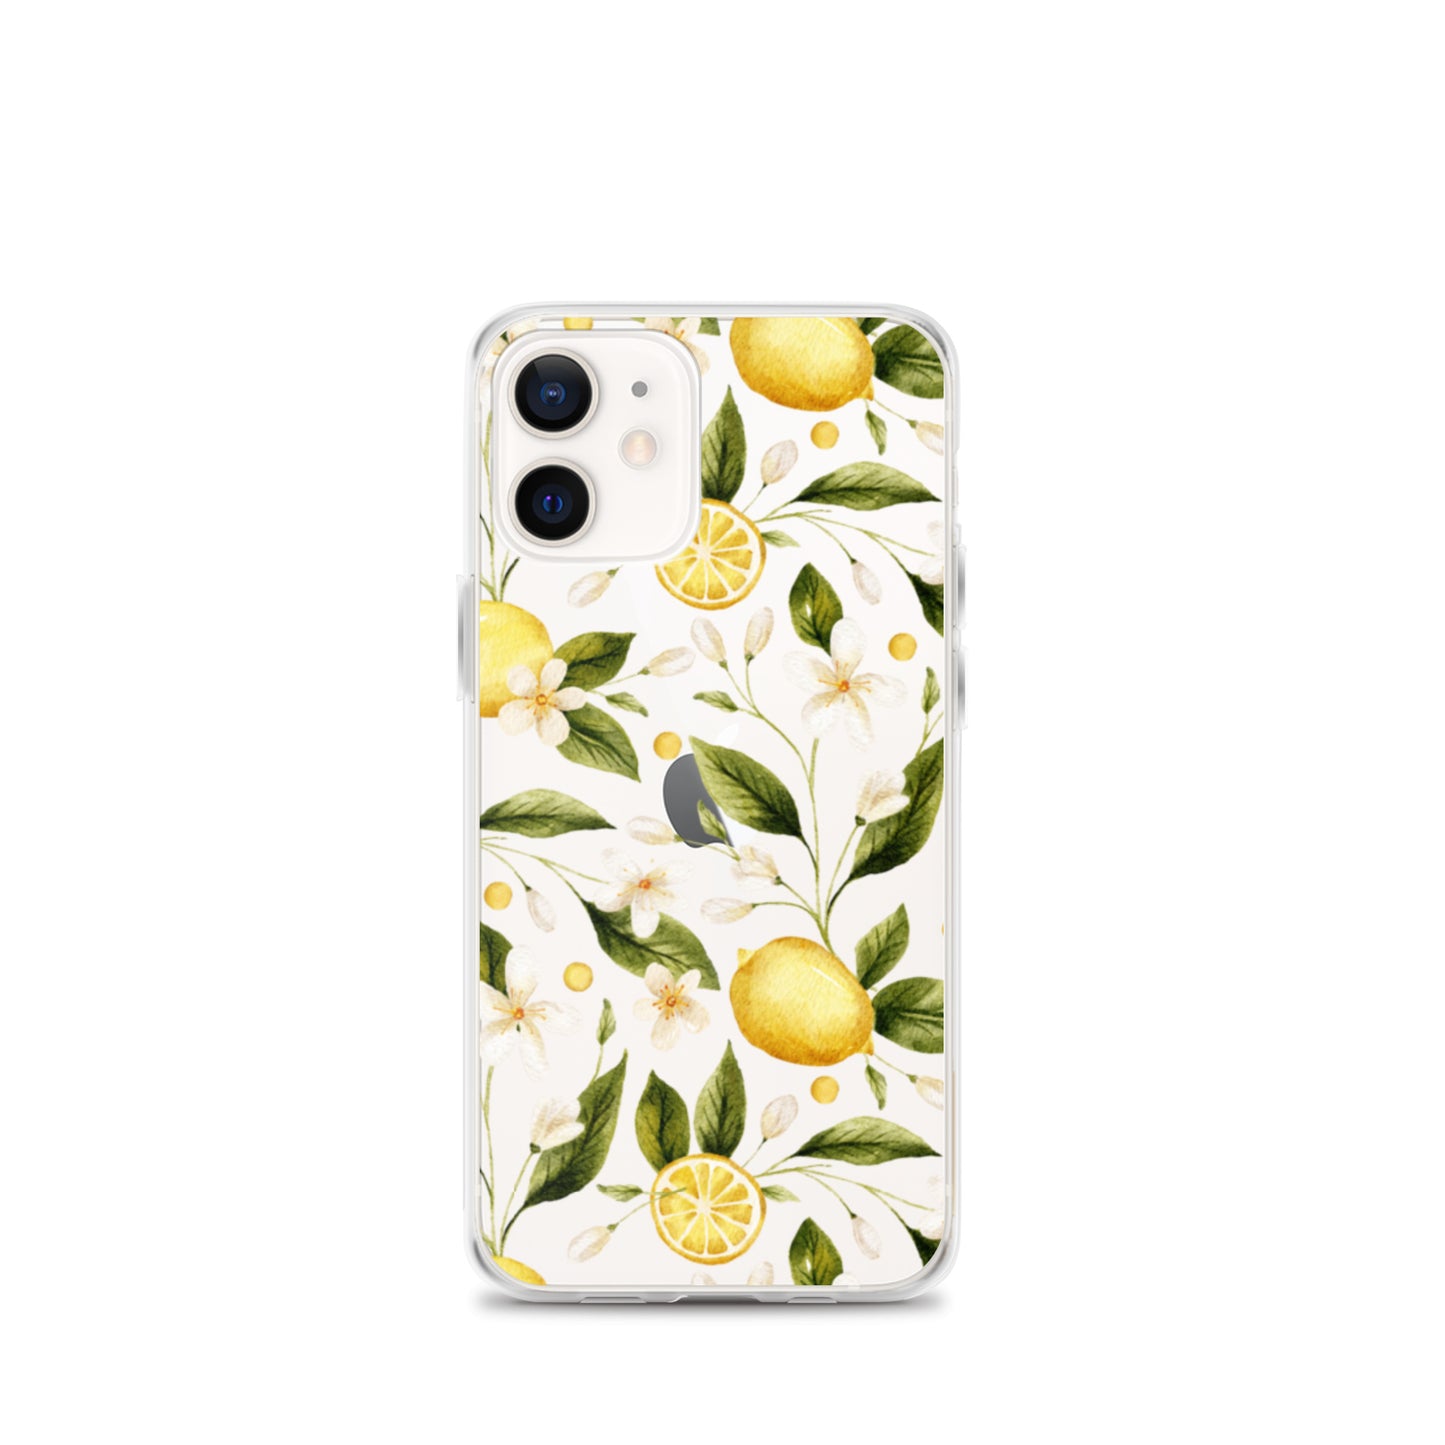 Lemon Garden Clear iPhone Case iPhone 12 mini